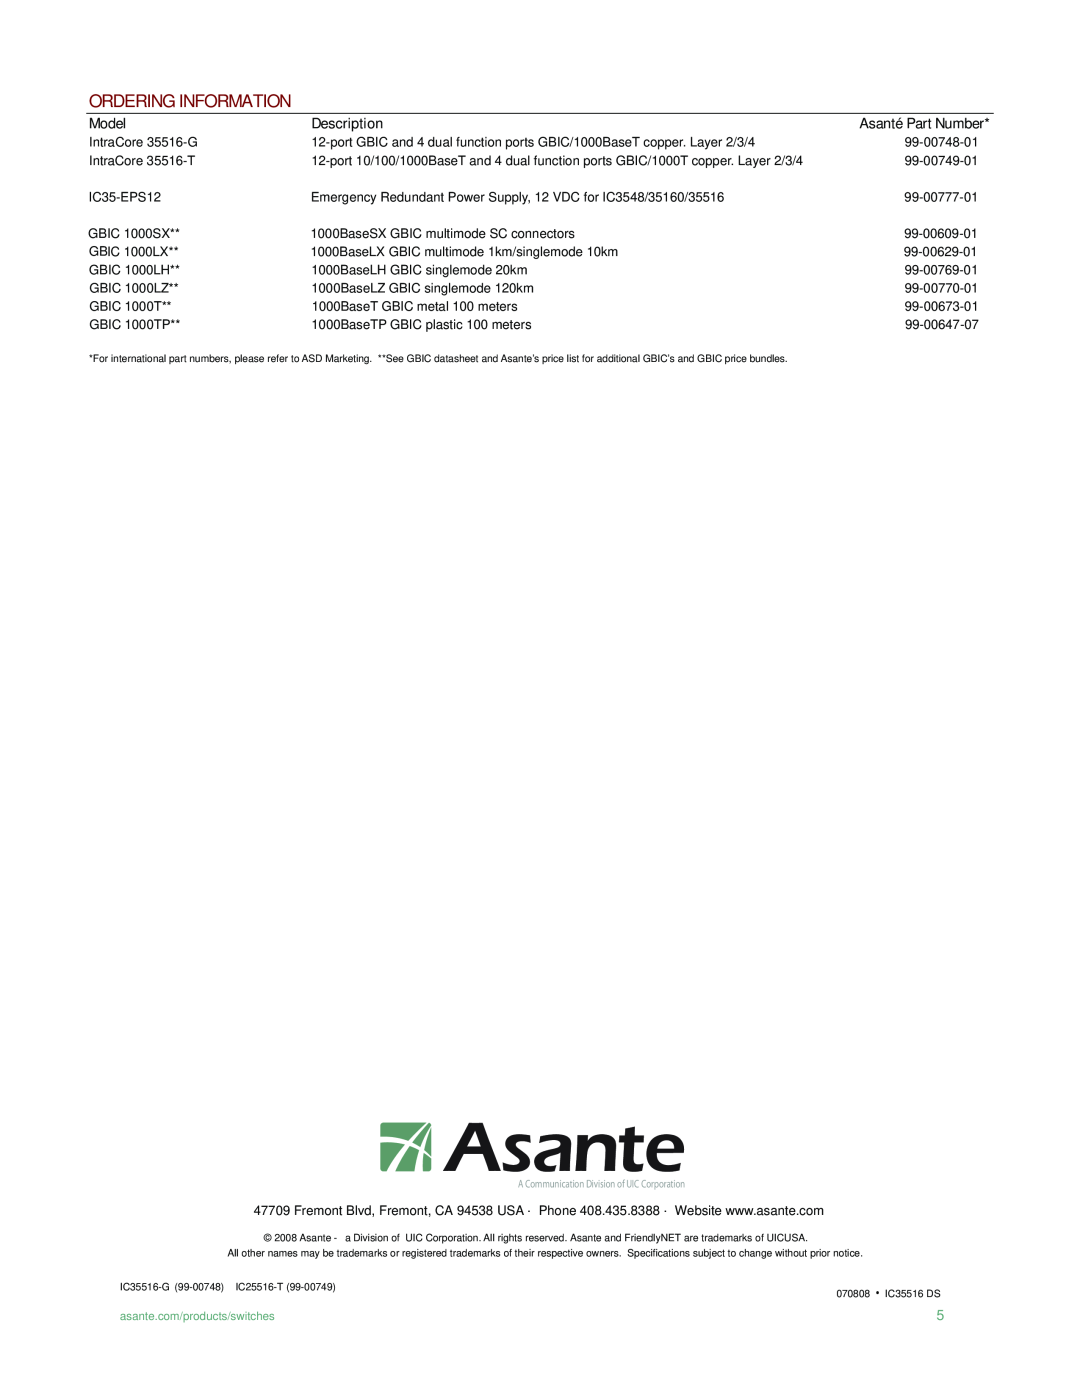 Asante Technologies IC35516G, IC35516T manual Ordering Information, Model, Description, Asanté Part Number 